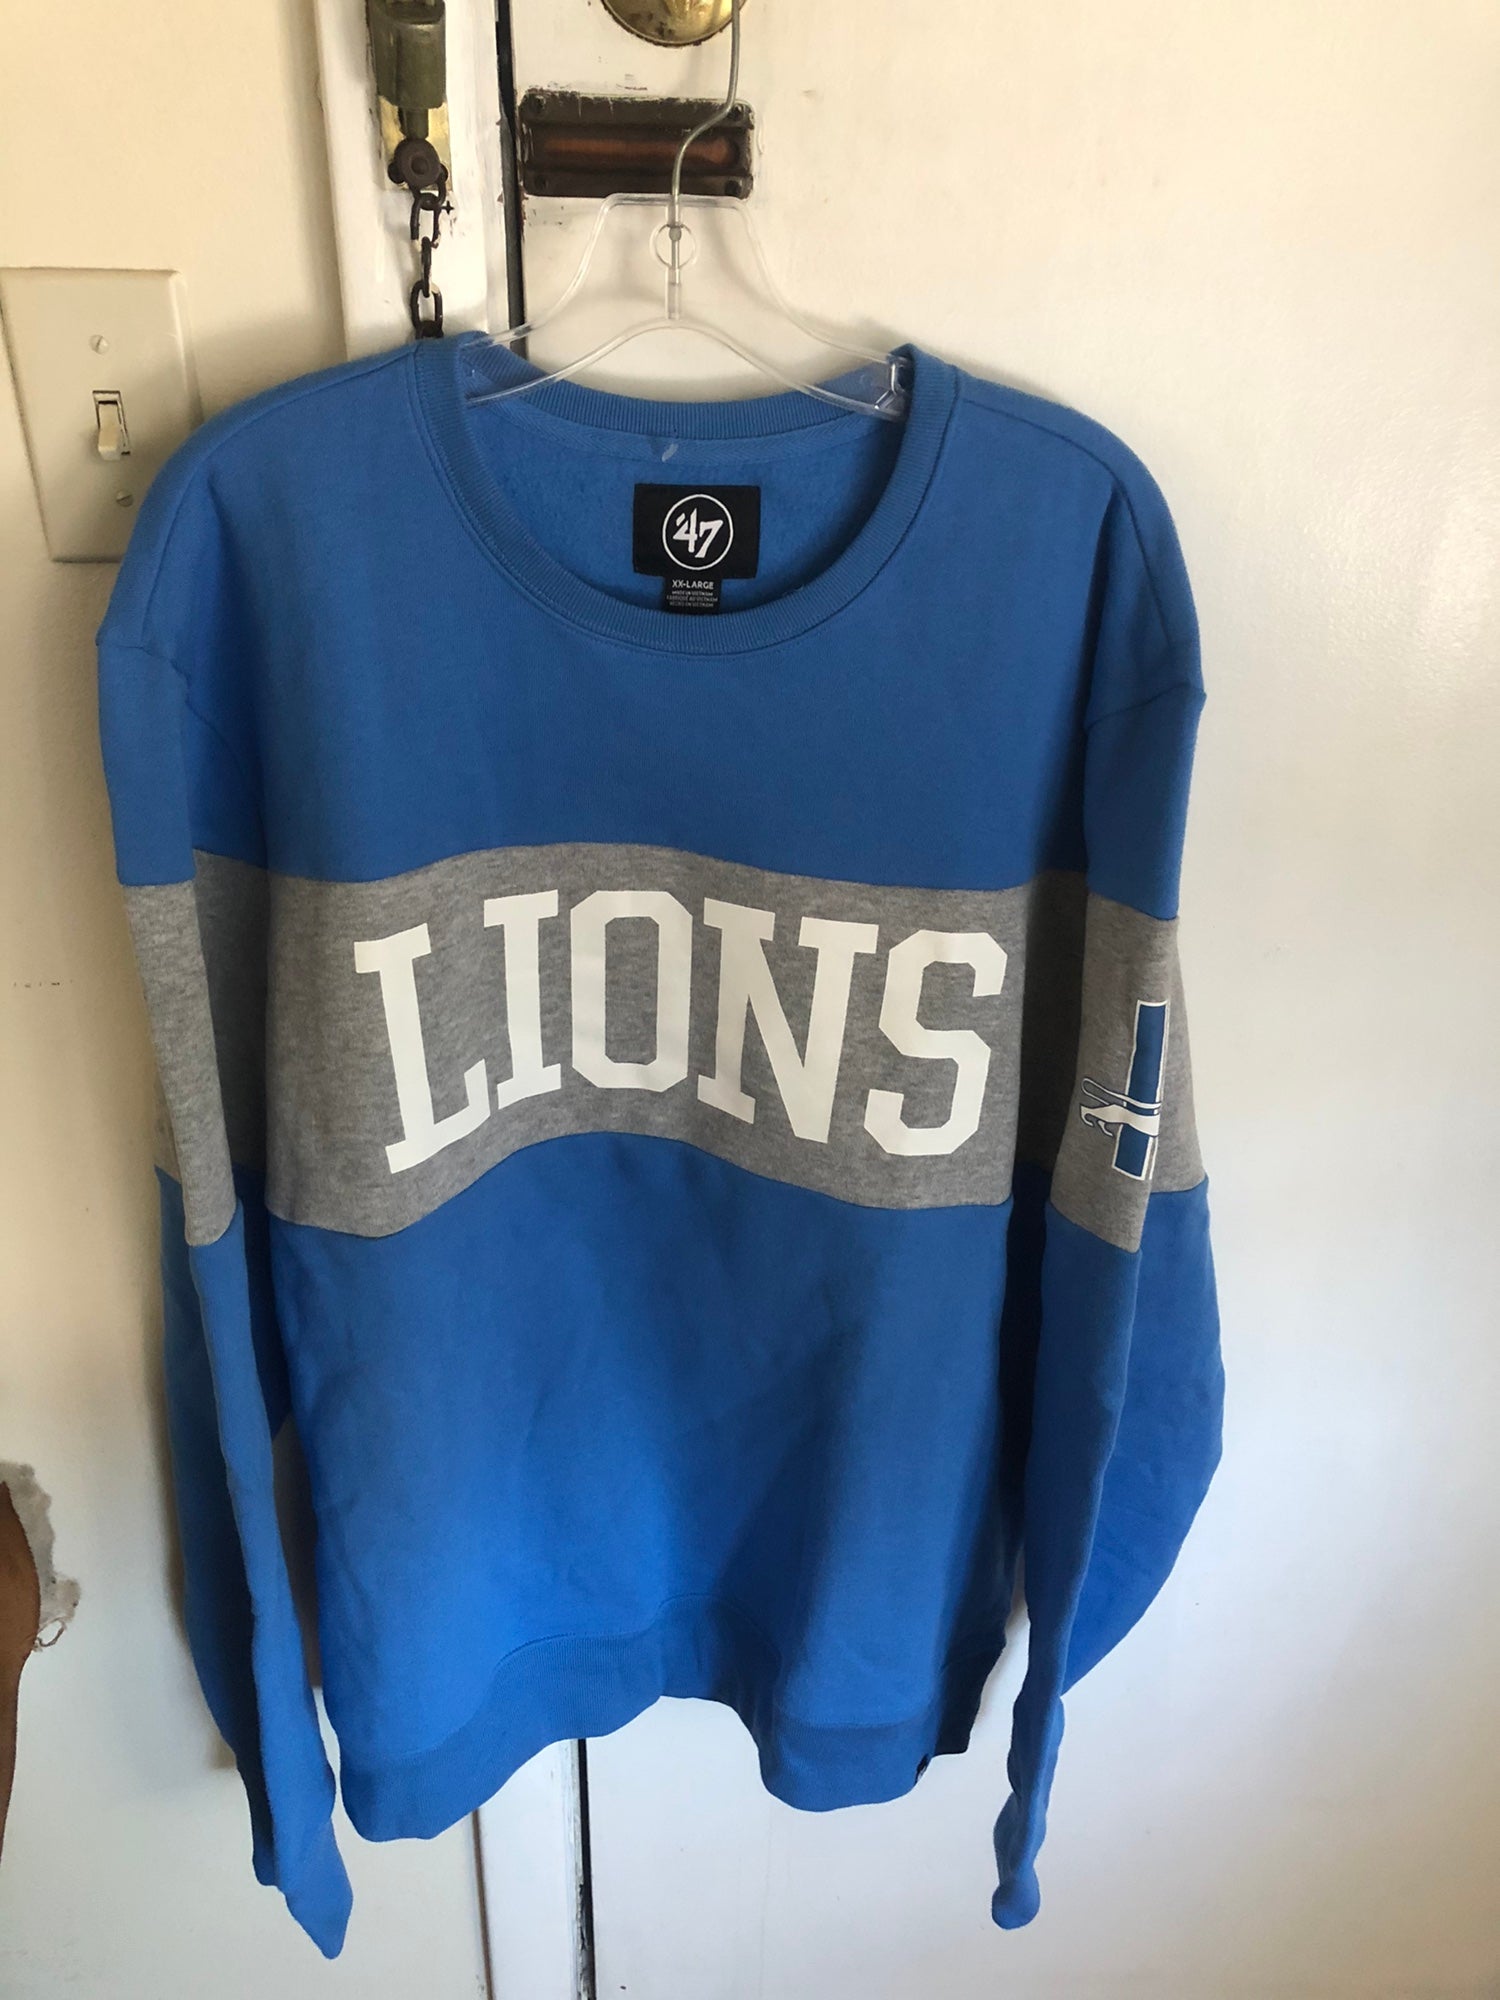 detroit lions pullover